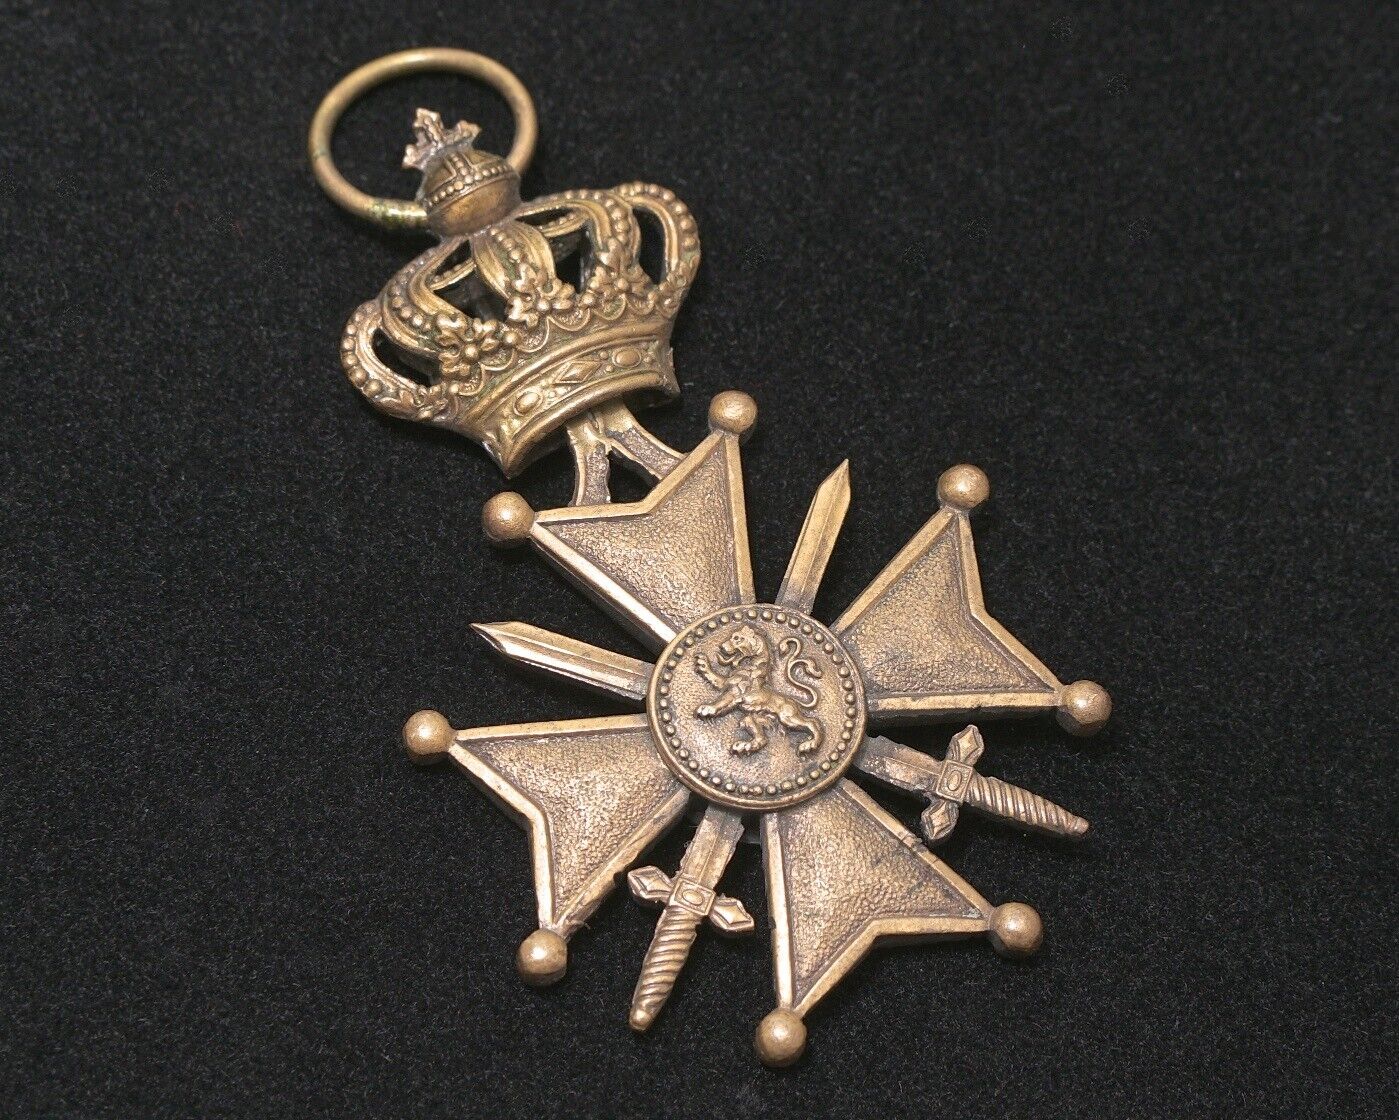 WWI Belgian Croix de Guerre, Belgium